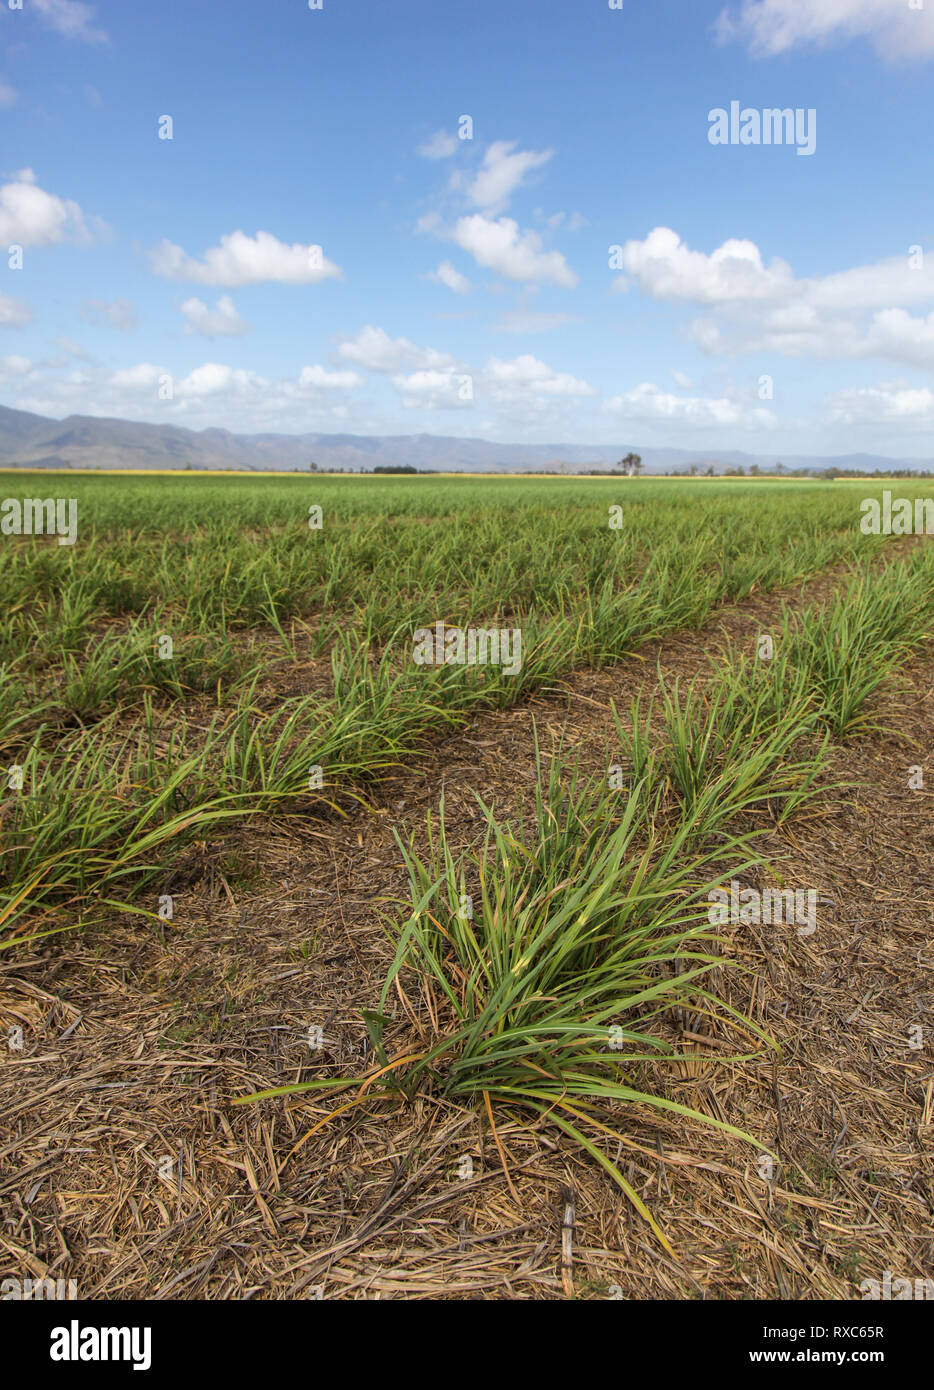 Junge Zuckerrohr in Feld südlich von Ingham - Far North Queensland Australien wächst. Die Zuckerindustrie ist ein wichtiger Teil des Queensland Wirtschaft Stockfoto